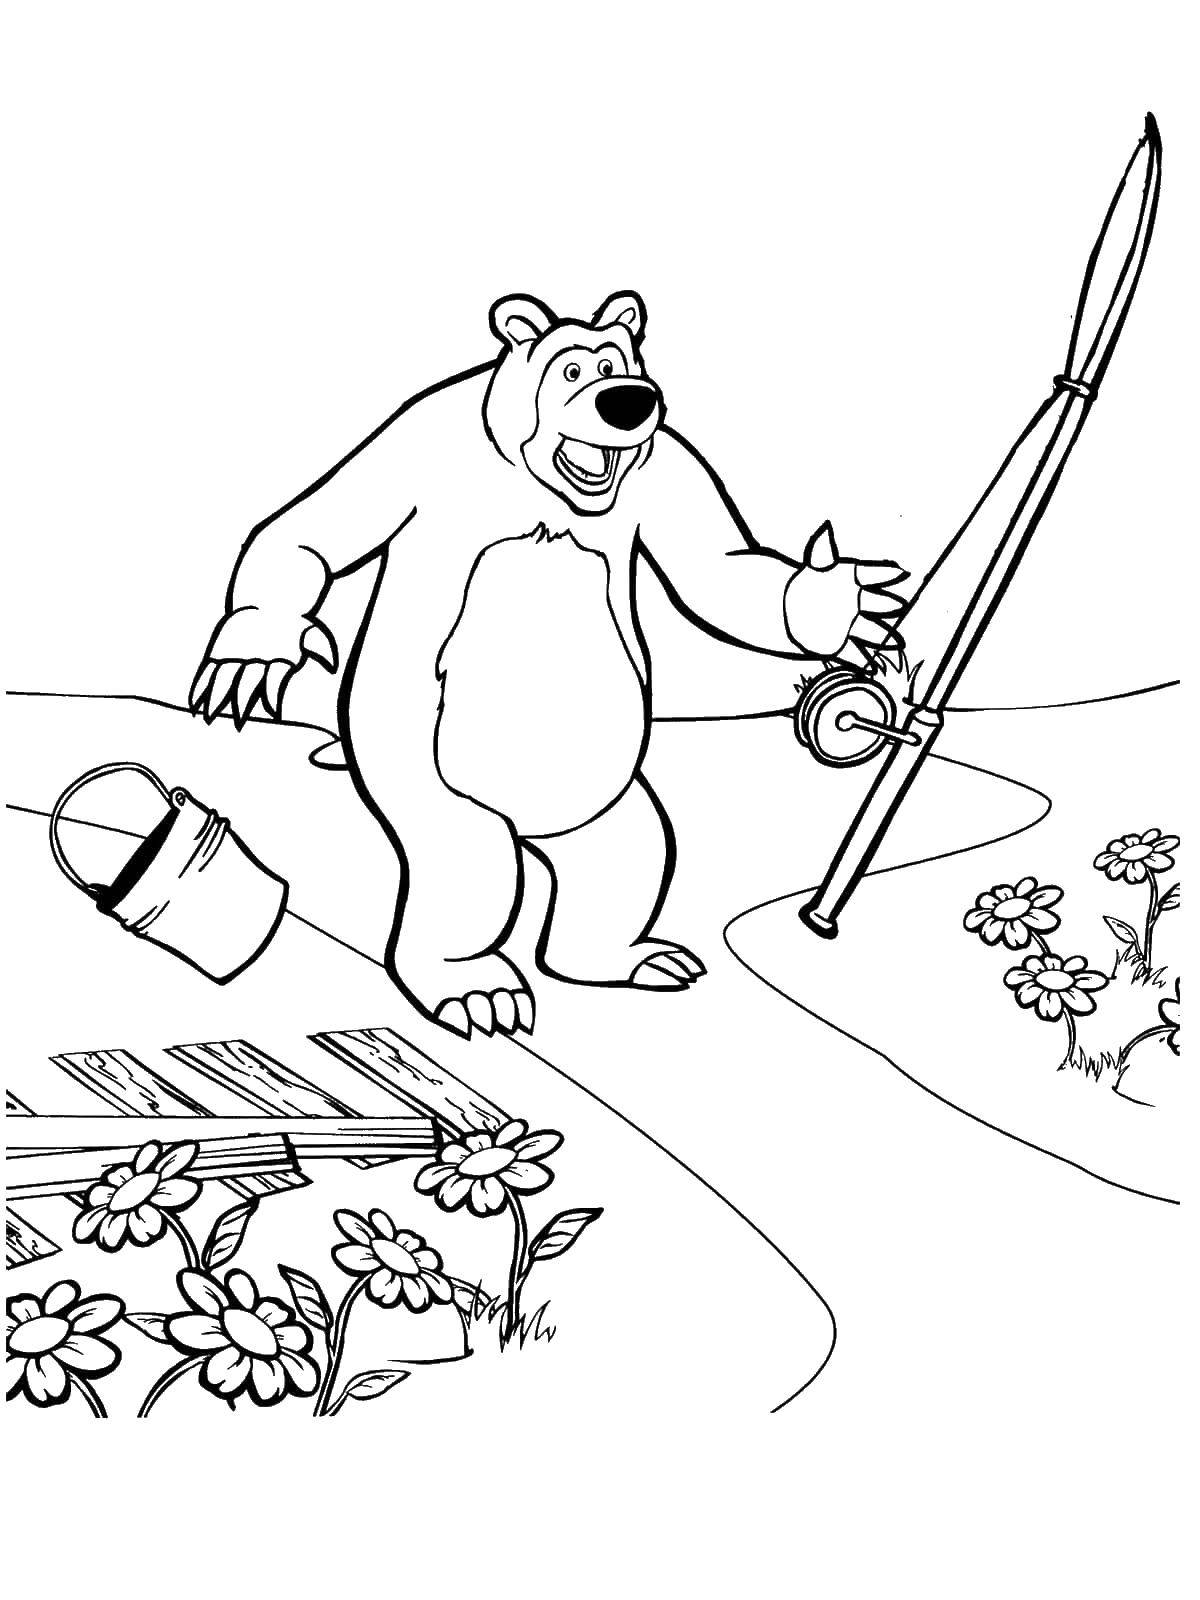 Раскраски для детей про озорную Машу из мультфильма Маша и медведь  Мишка после рыбалки